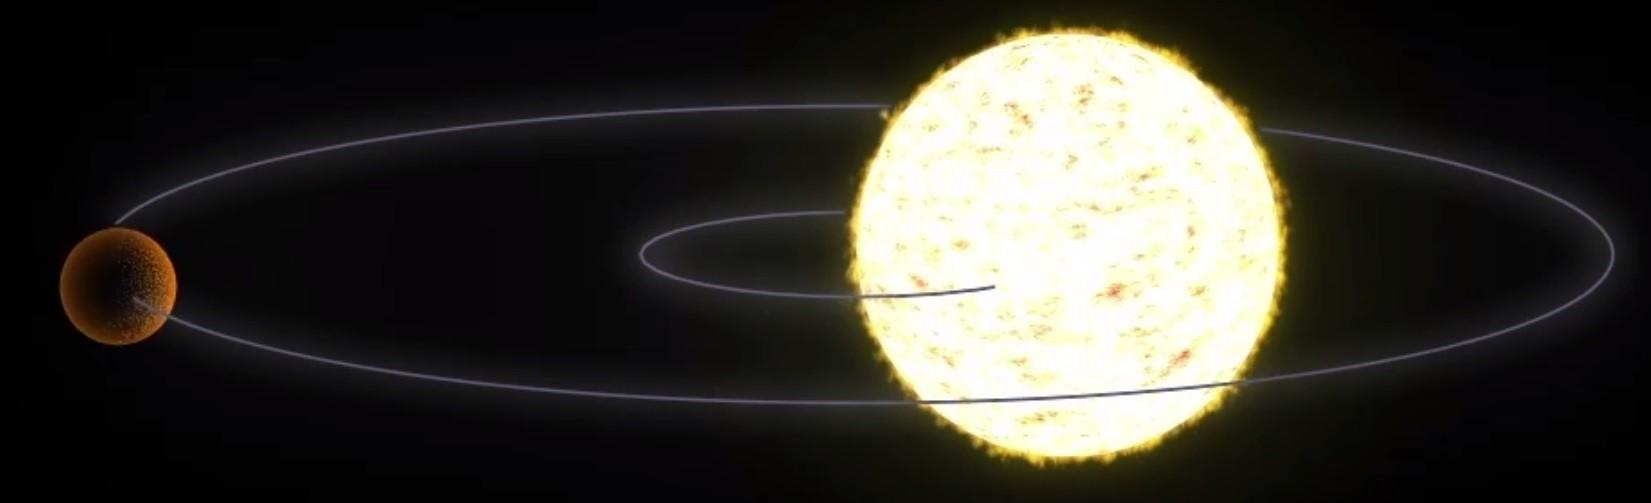 tirón gravitatorio exoplaneta